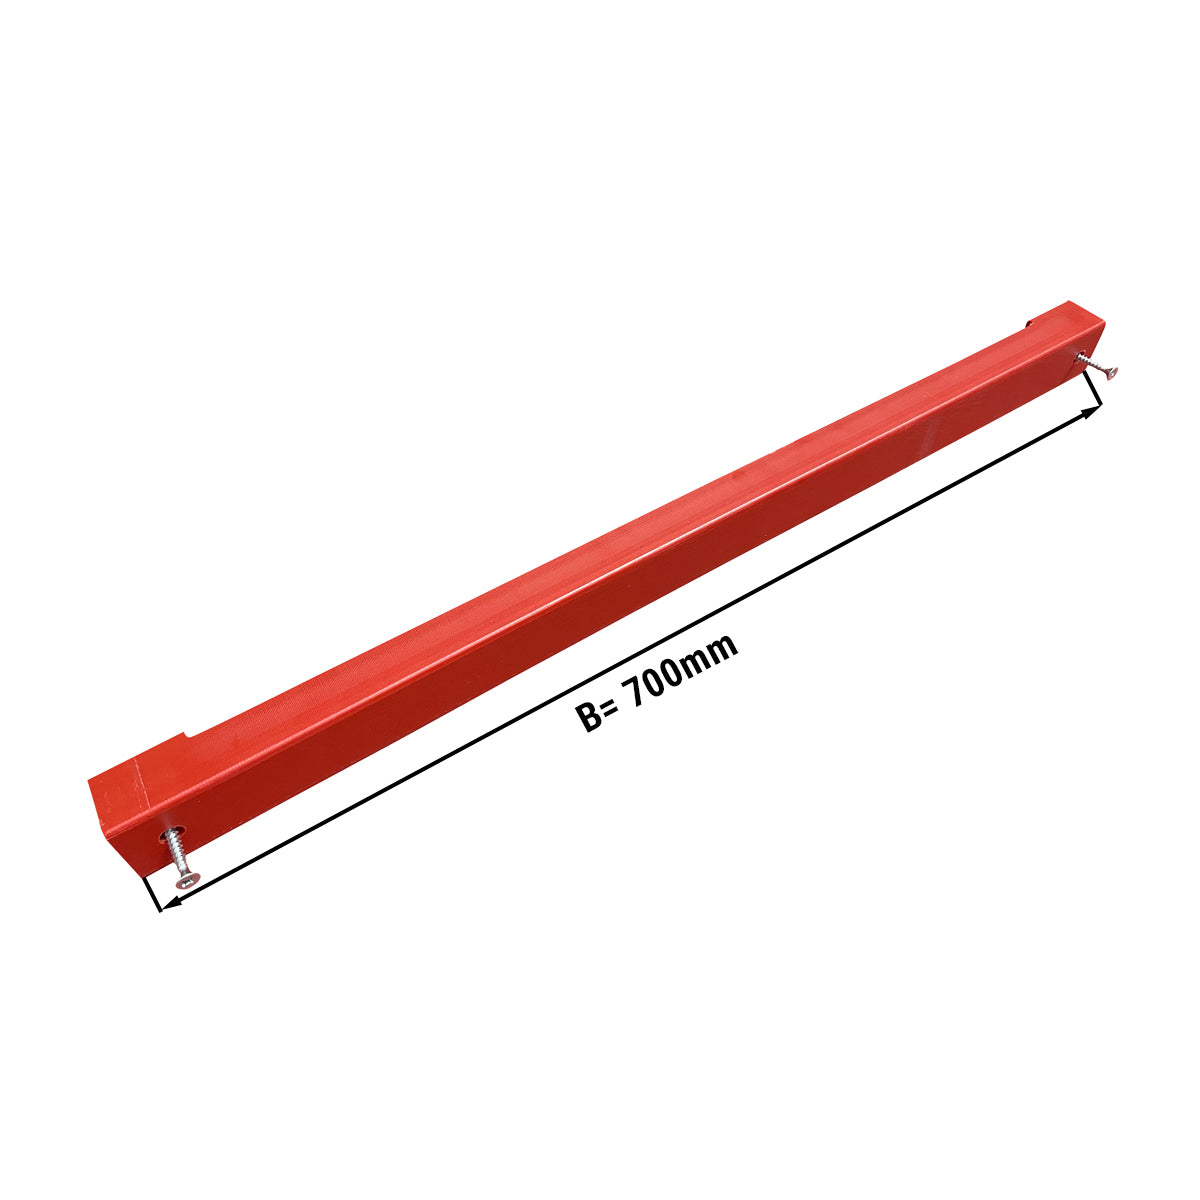 Knivholder til skjærebrett - 70 cm - rød